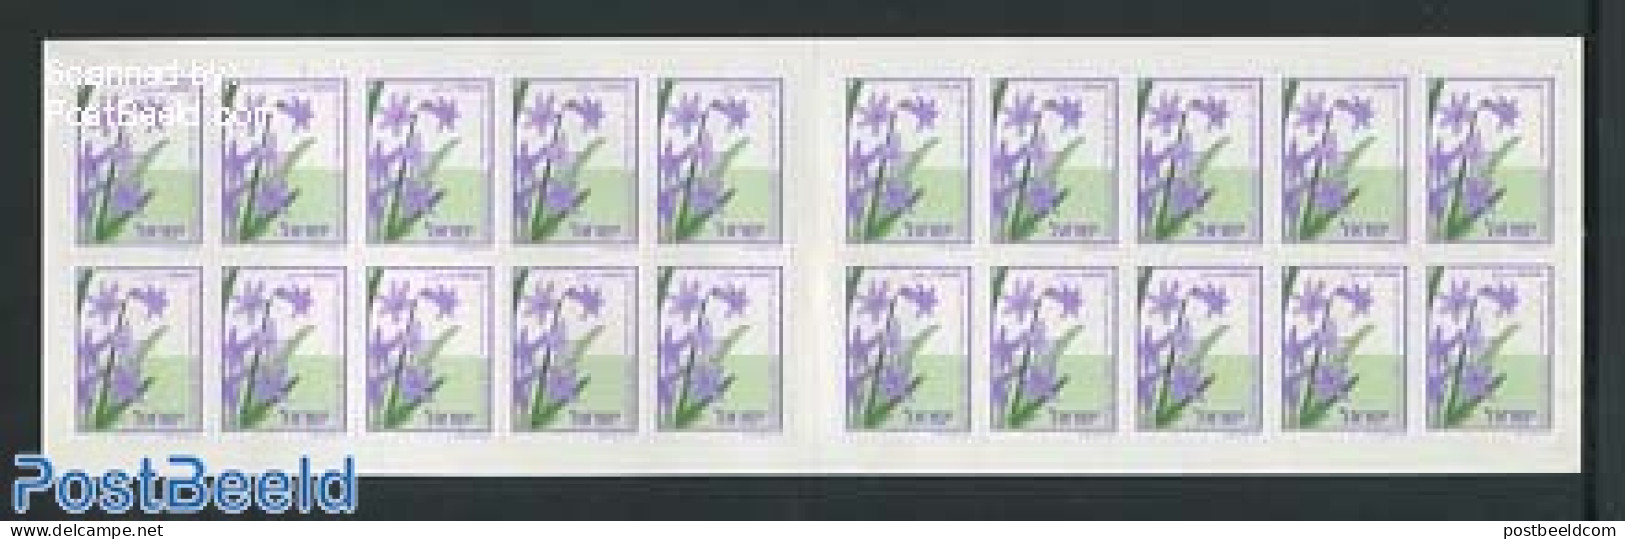 Israel 2003 Flower Booklet, Mint NH, Nature - Flowers & Plants - Stamp Booklets - Ongebruikt (met Tabs)